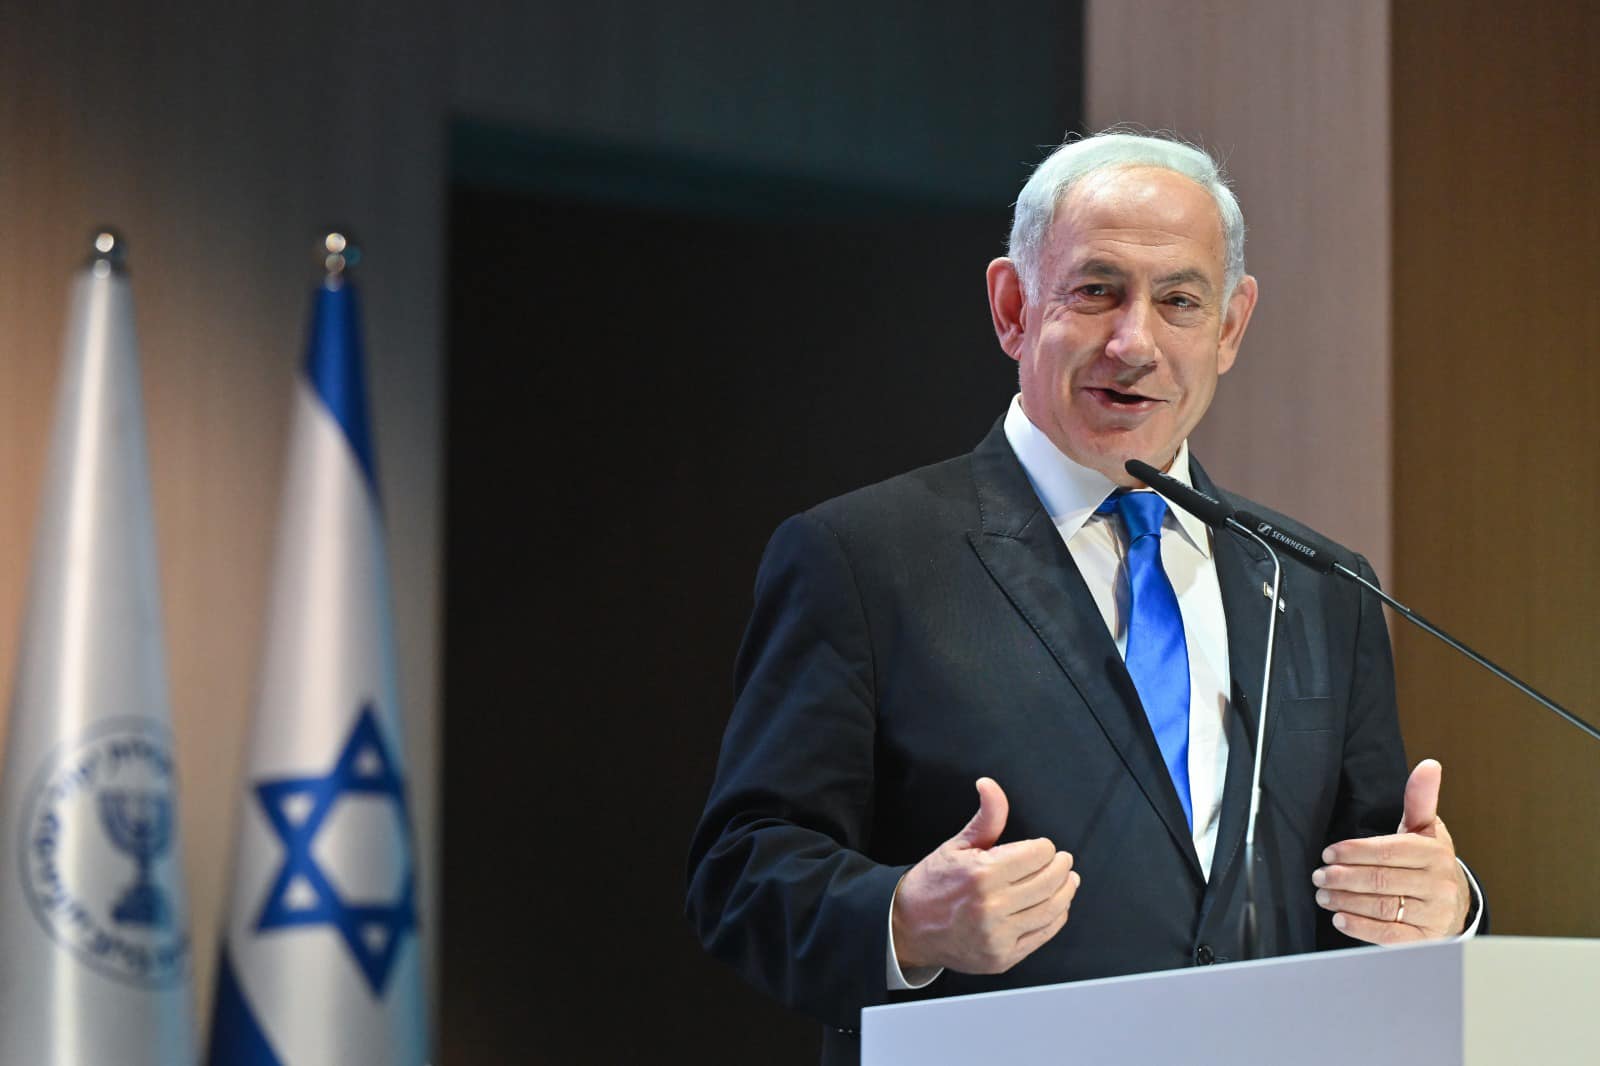 以色列總理納坦雅胡將於下月24日在美國國會發表演講。圖/取自Benjamin Netanyahu臉書